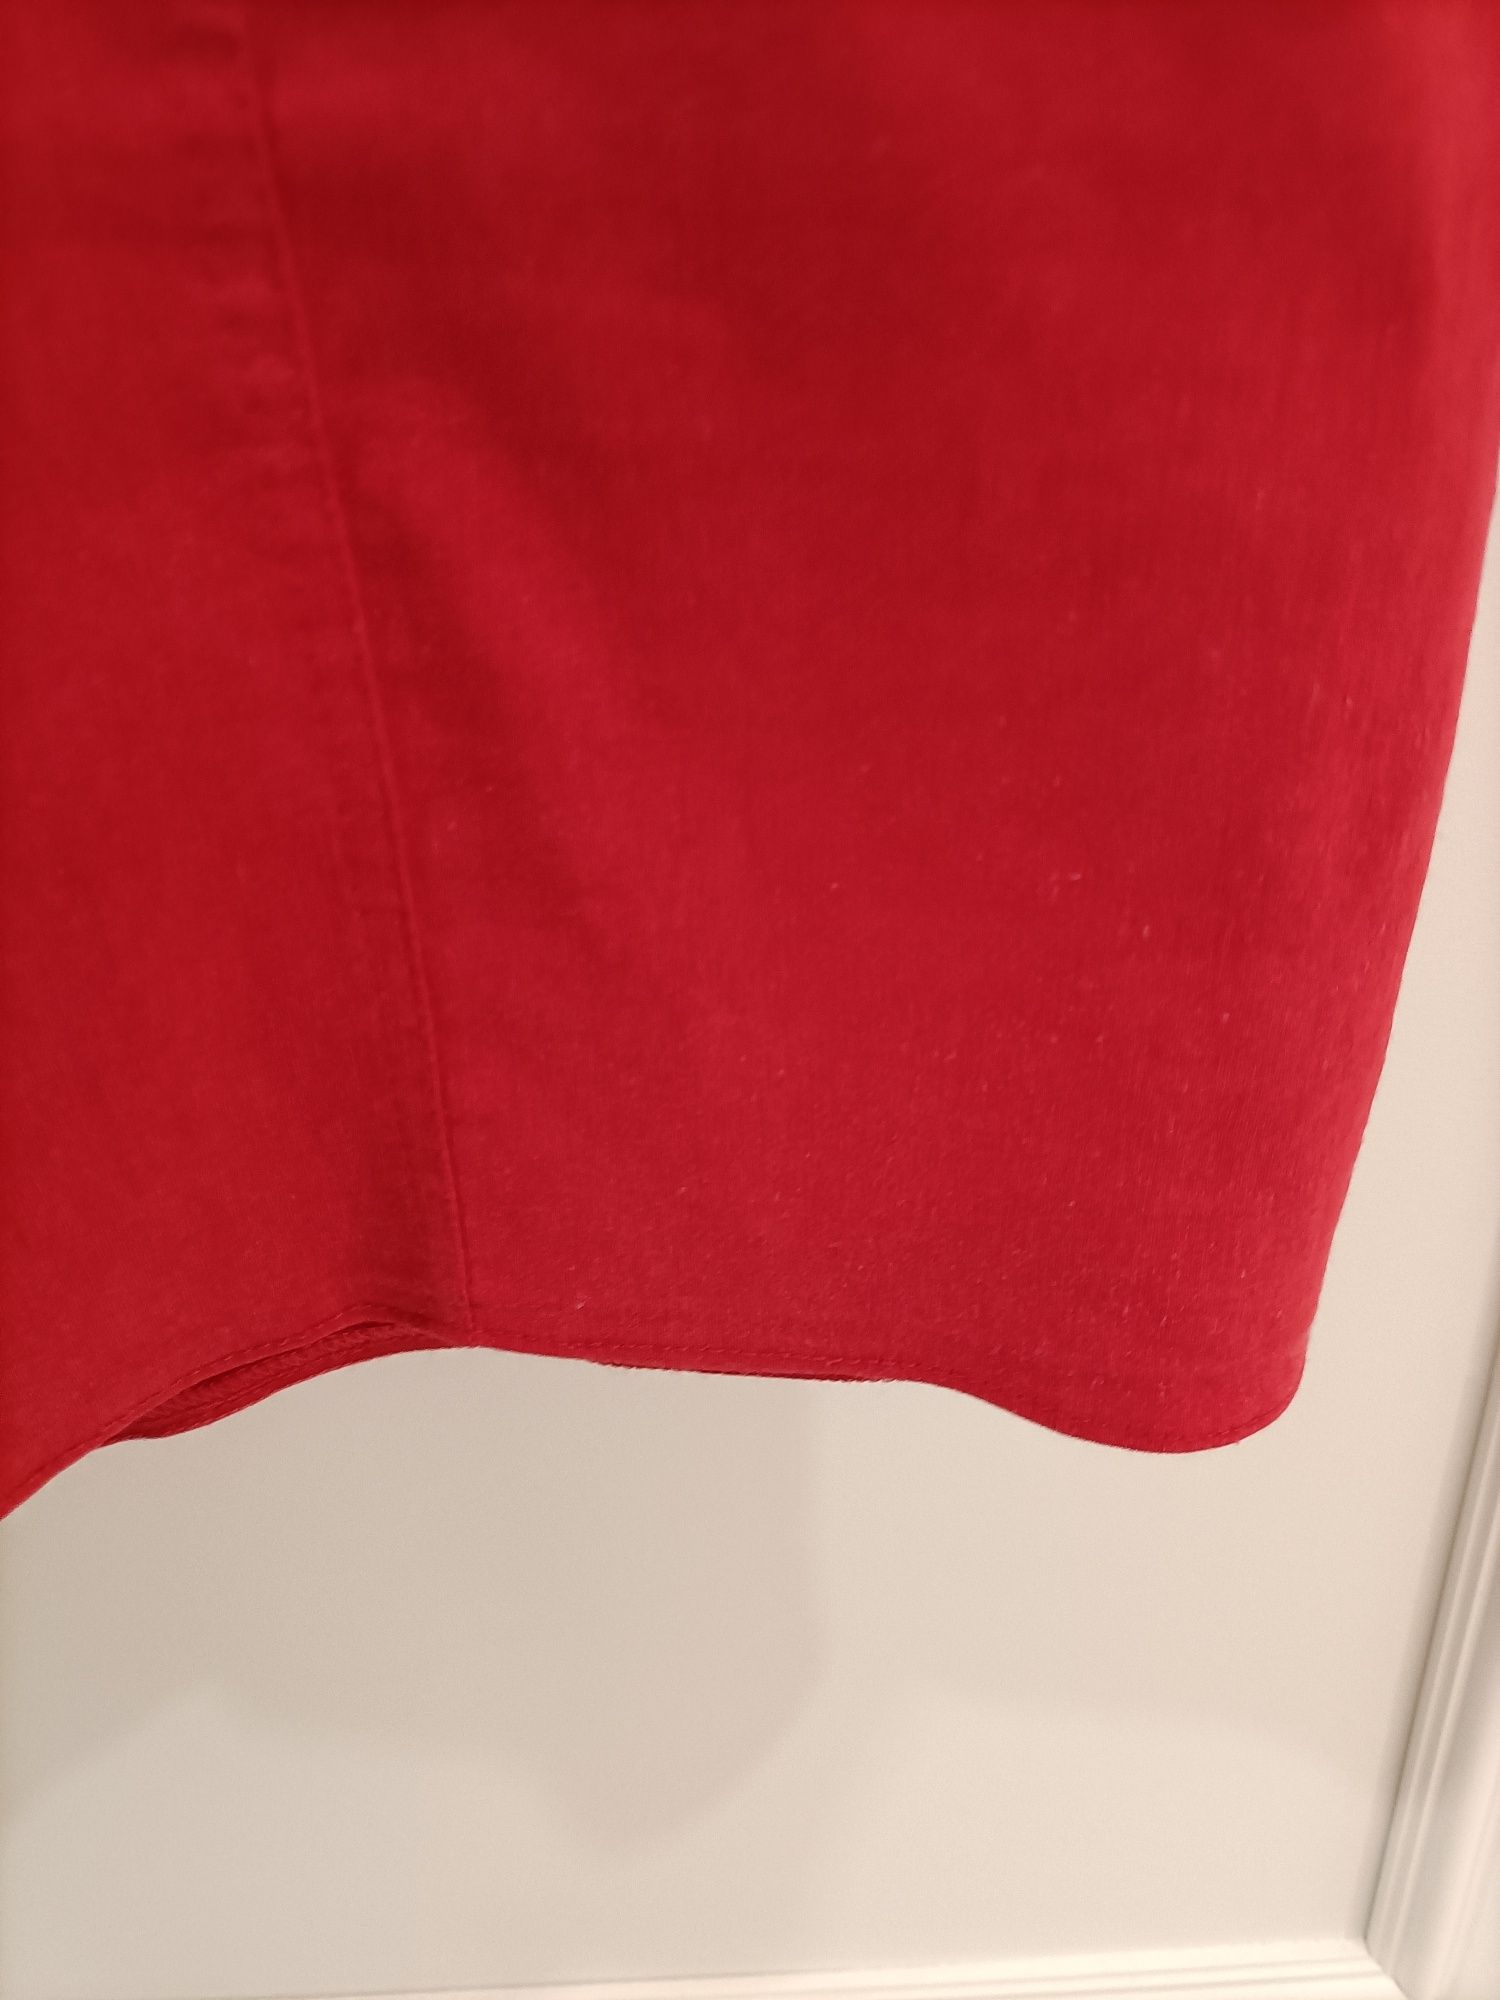 Spódnica prosta czerwona elegancka bawełna XL